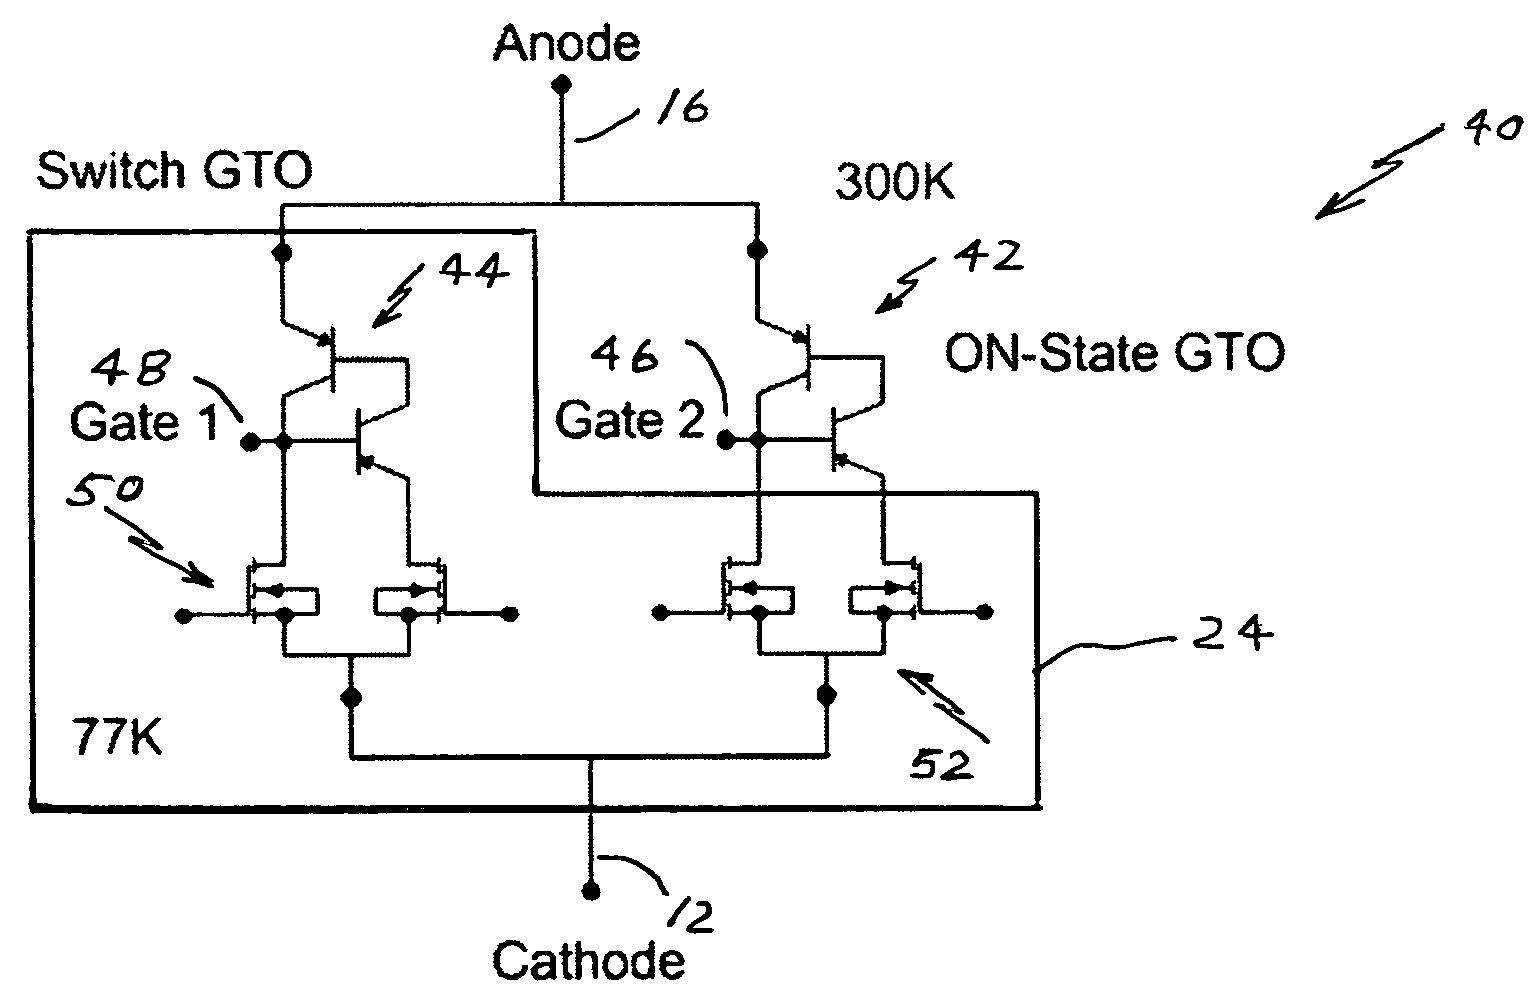 Efficient thyristor-type power switches